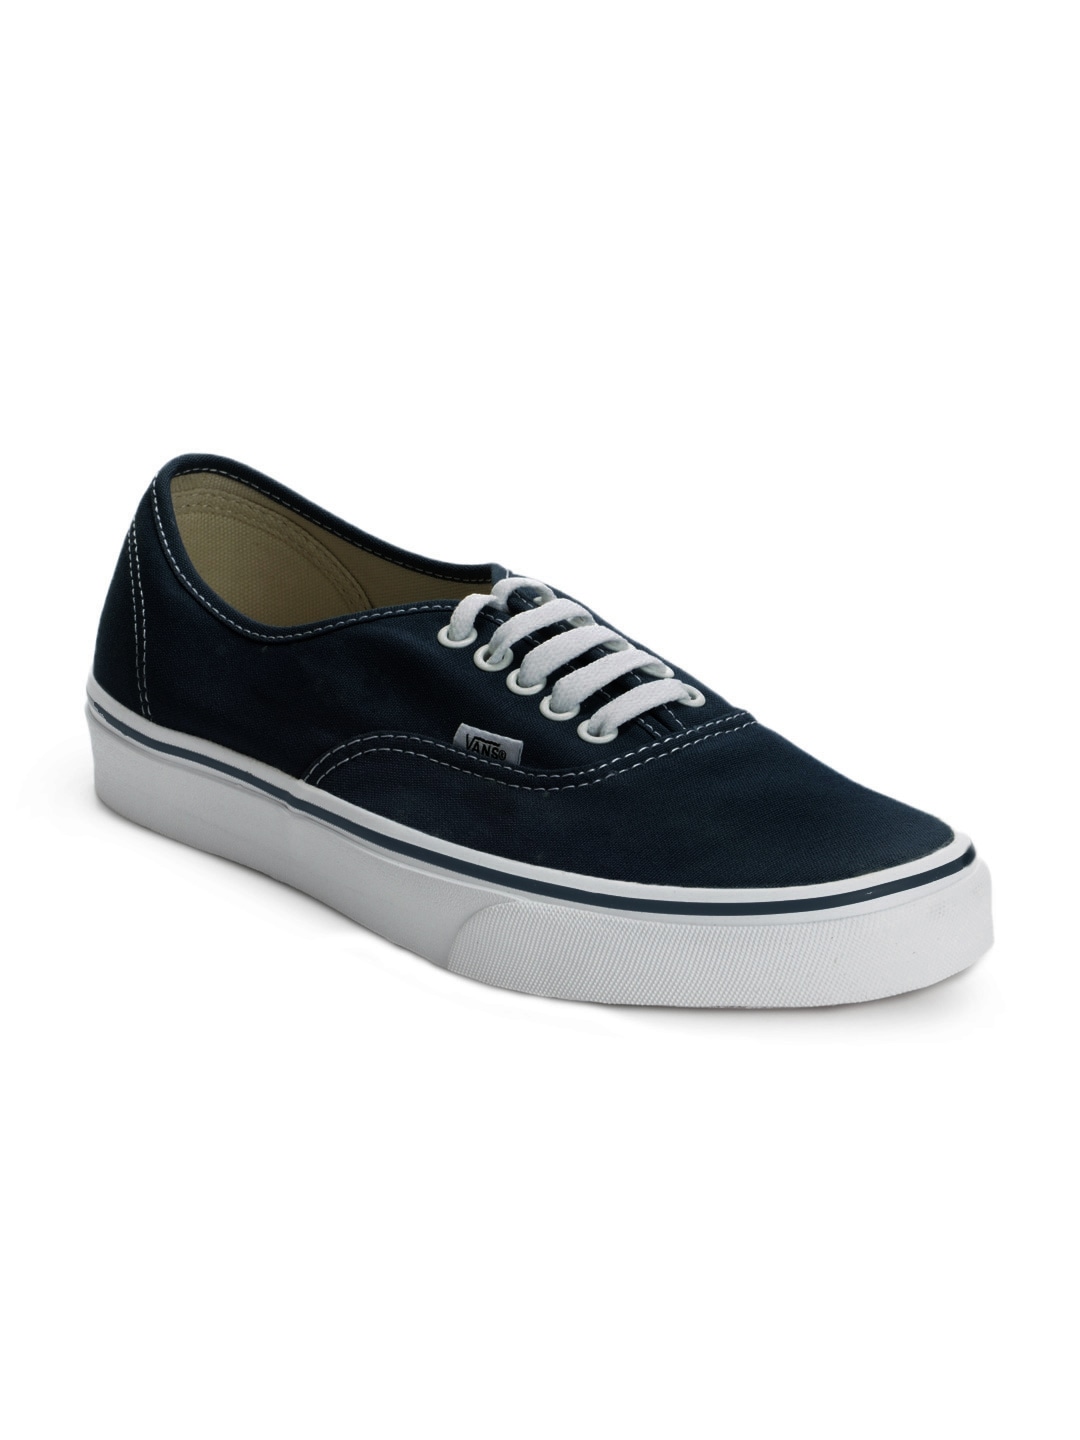 Vans Men Navy Blue Casual Shoes